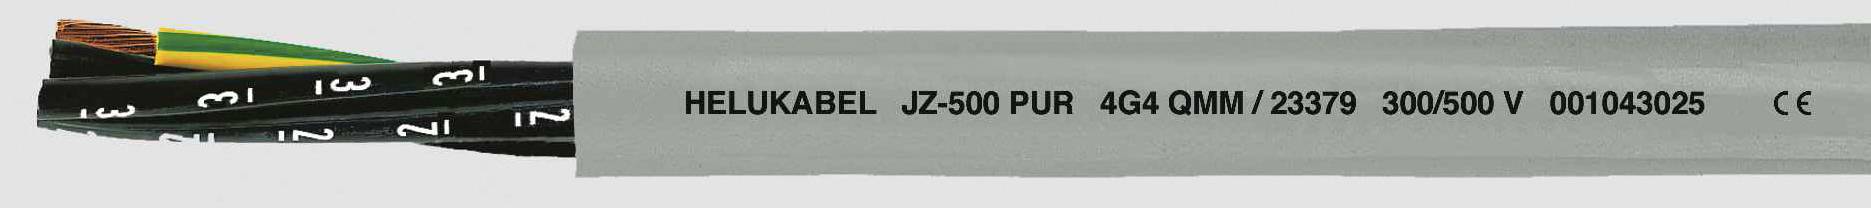 HELUKABEL JZ-500 PUR Steuerleitung 3 G 1 mm² Grau 23345 100 m